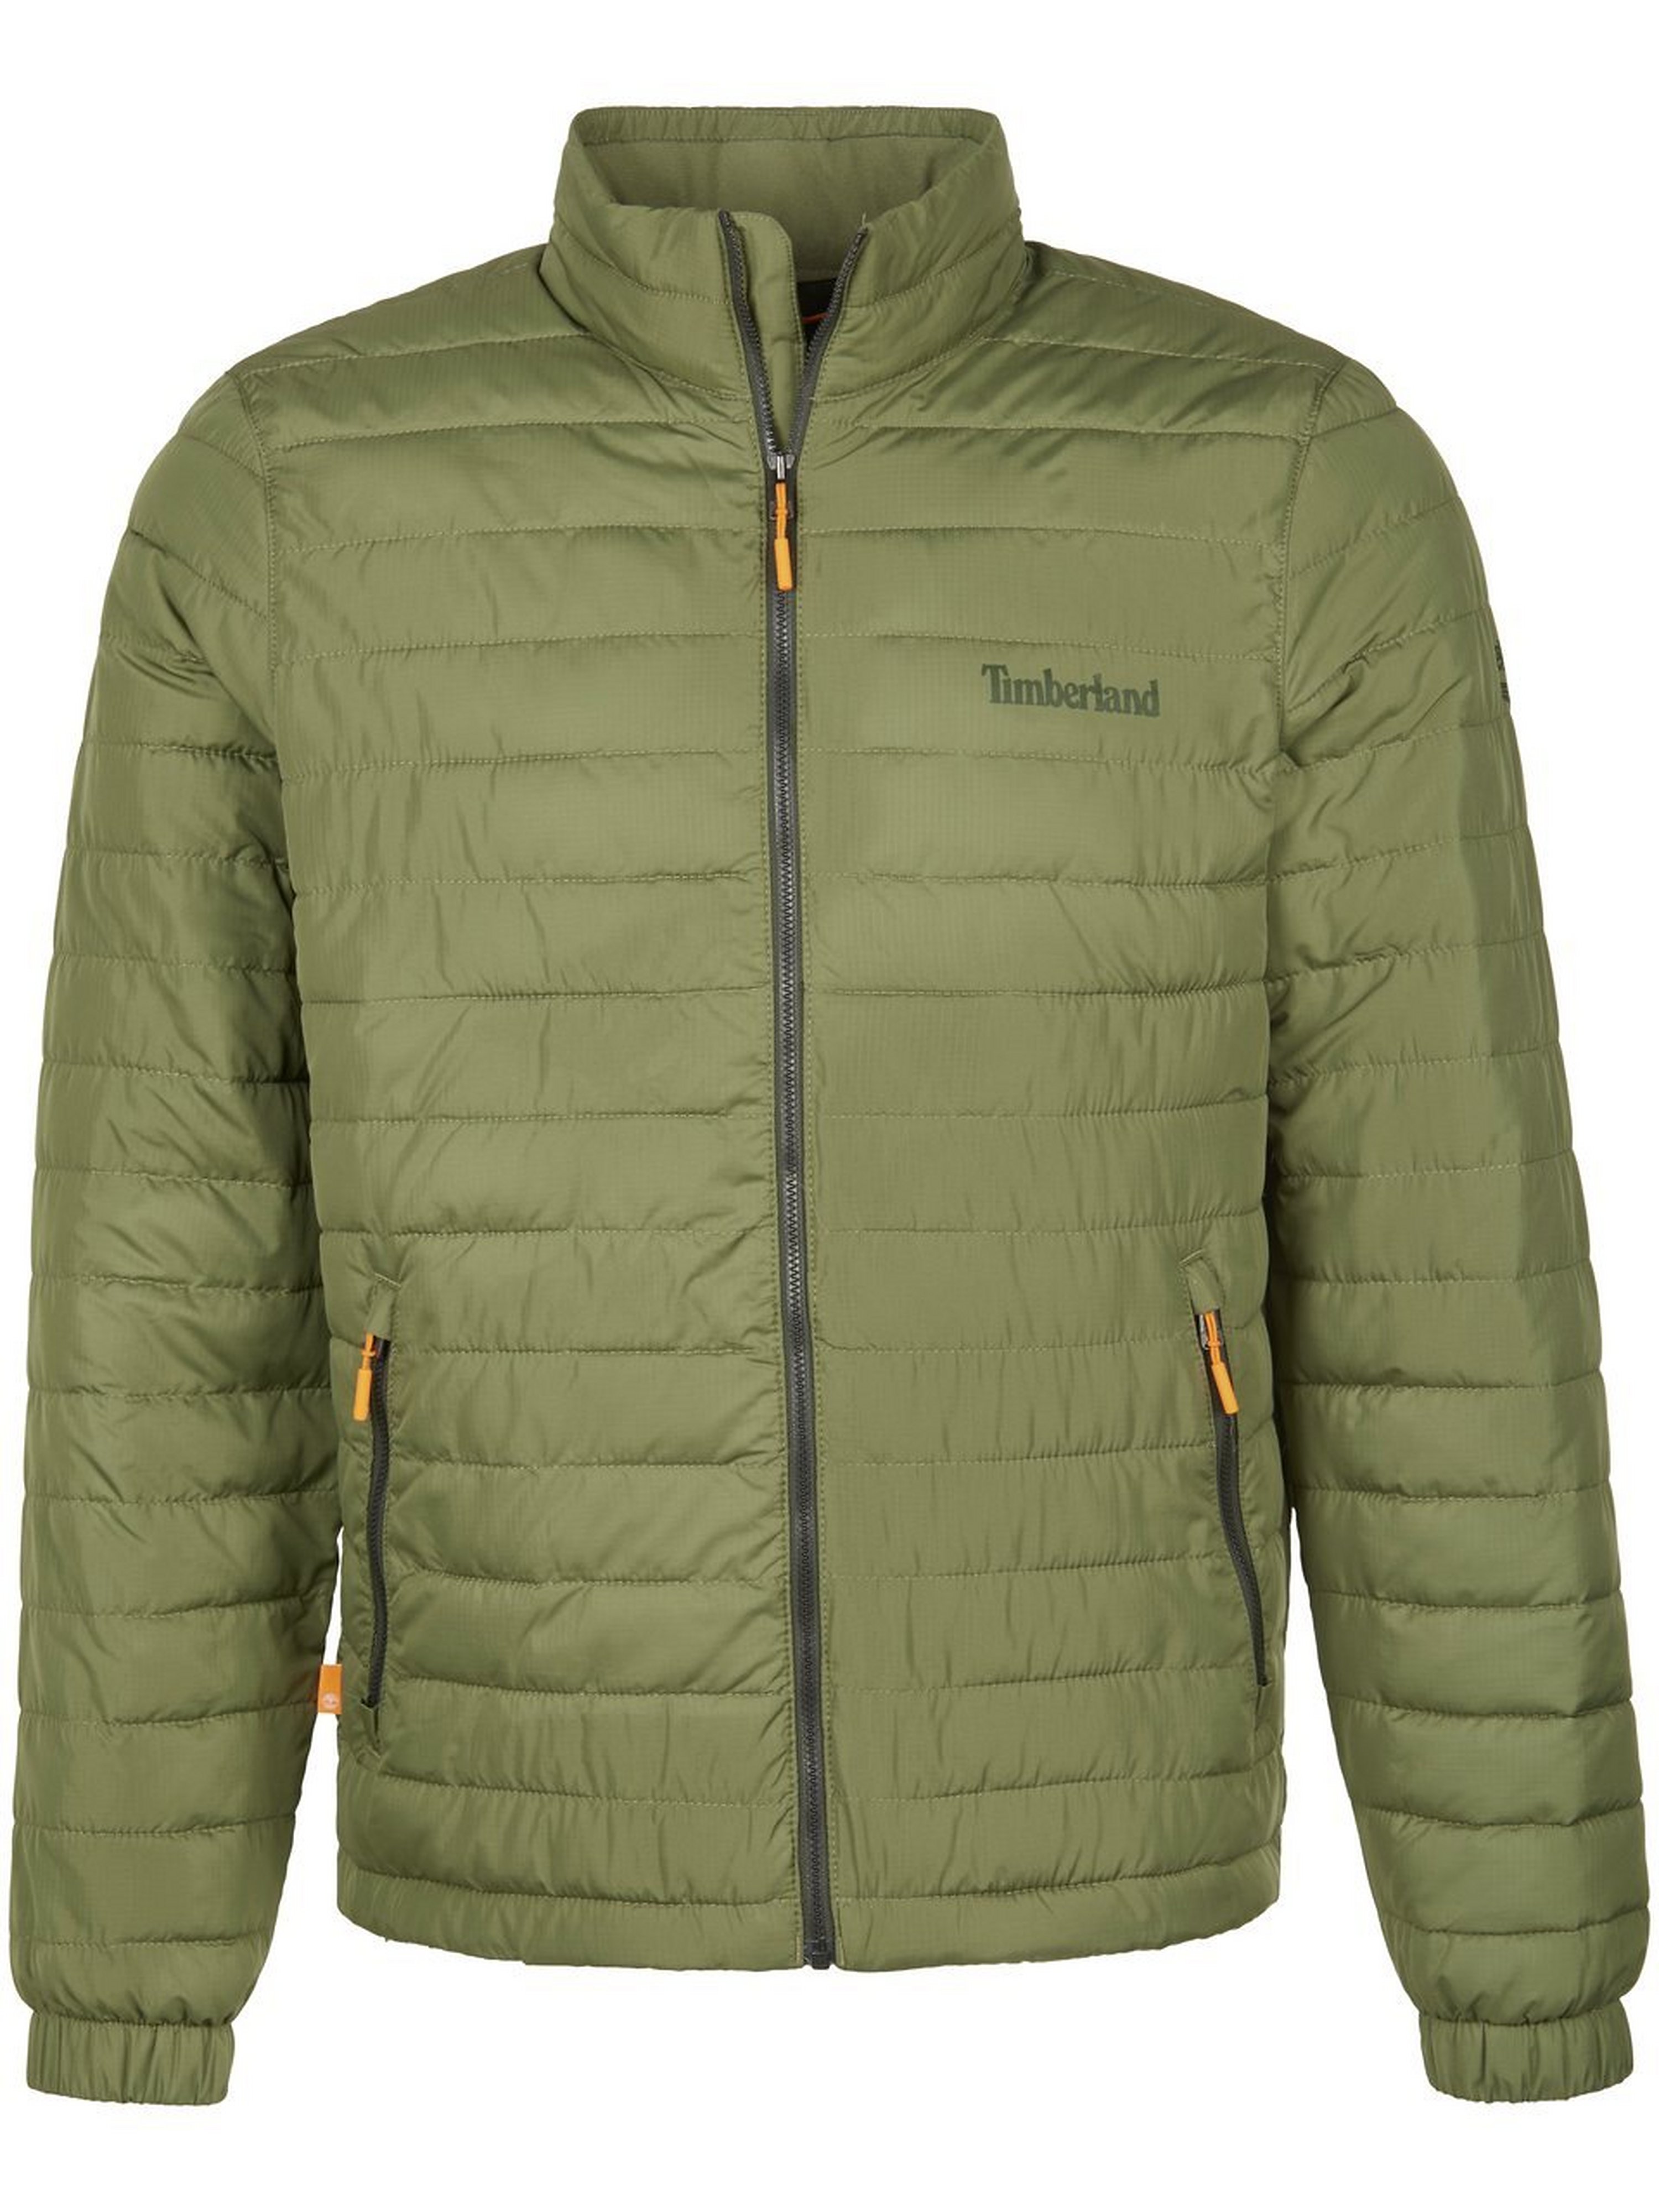 Timberland Gewatteerde jas Axis Peak DWR Jkt Van groen